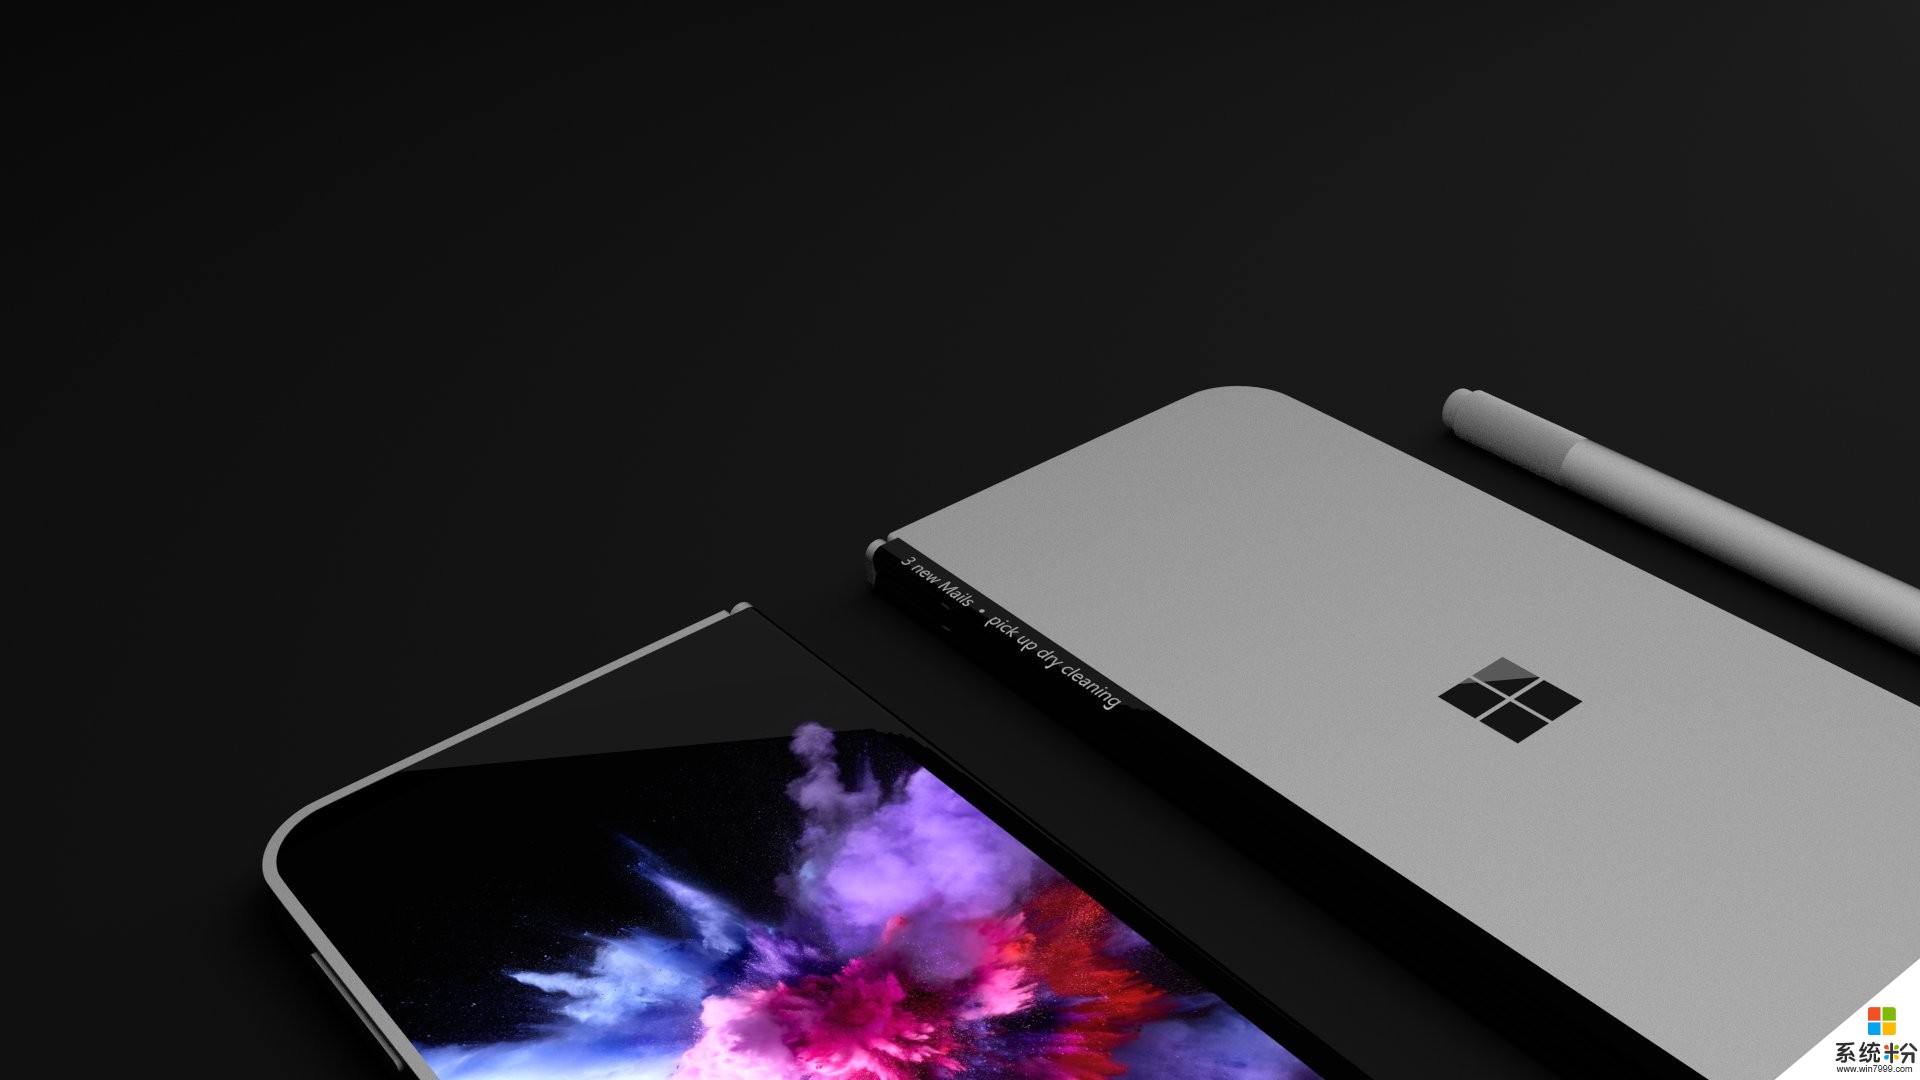 说漏嘴? 微软自曝Surface Phone双屏折叠机(3)